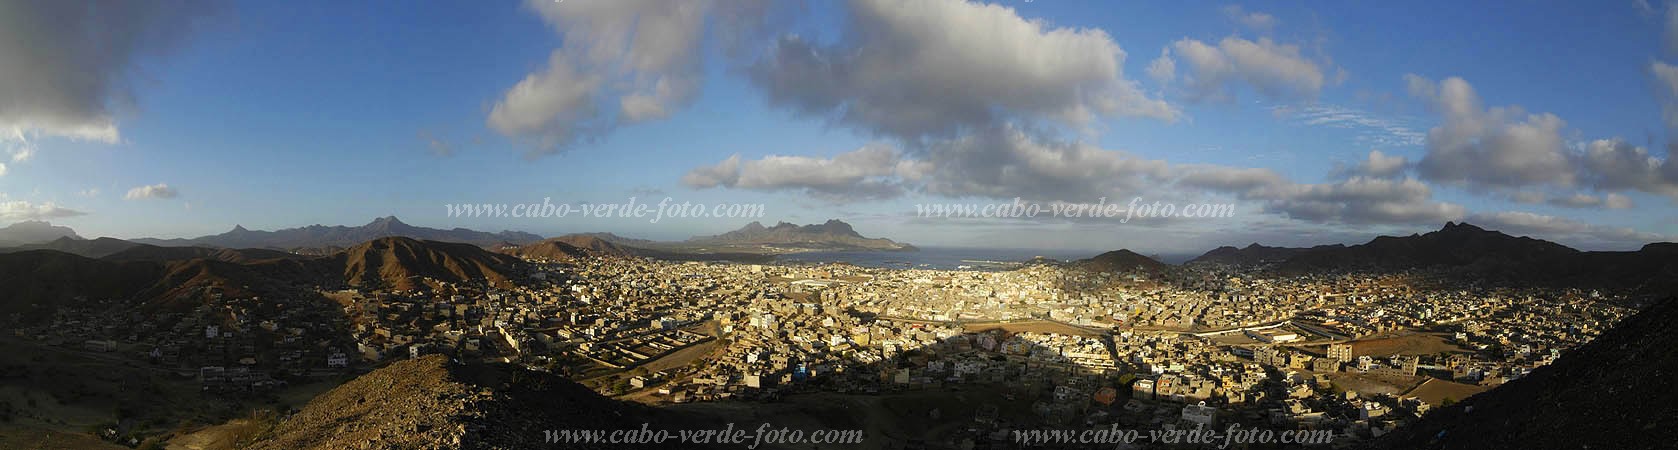 So Vicente : Pedra Rolada : vila : Landscape TownCabo Verde Foto Gallery